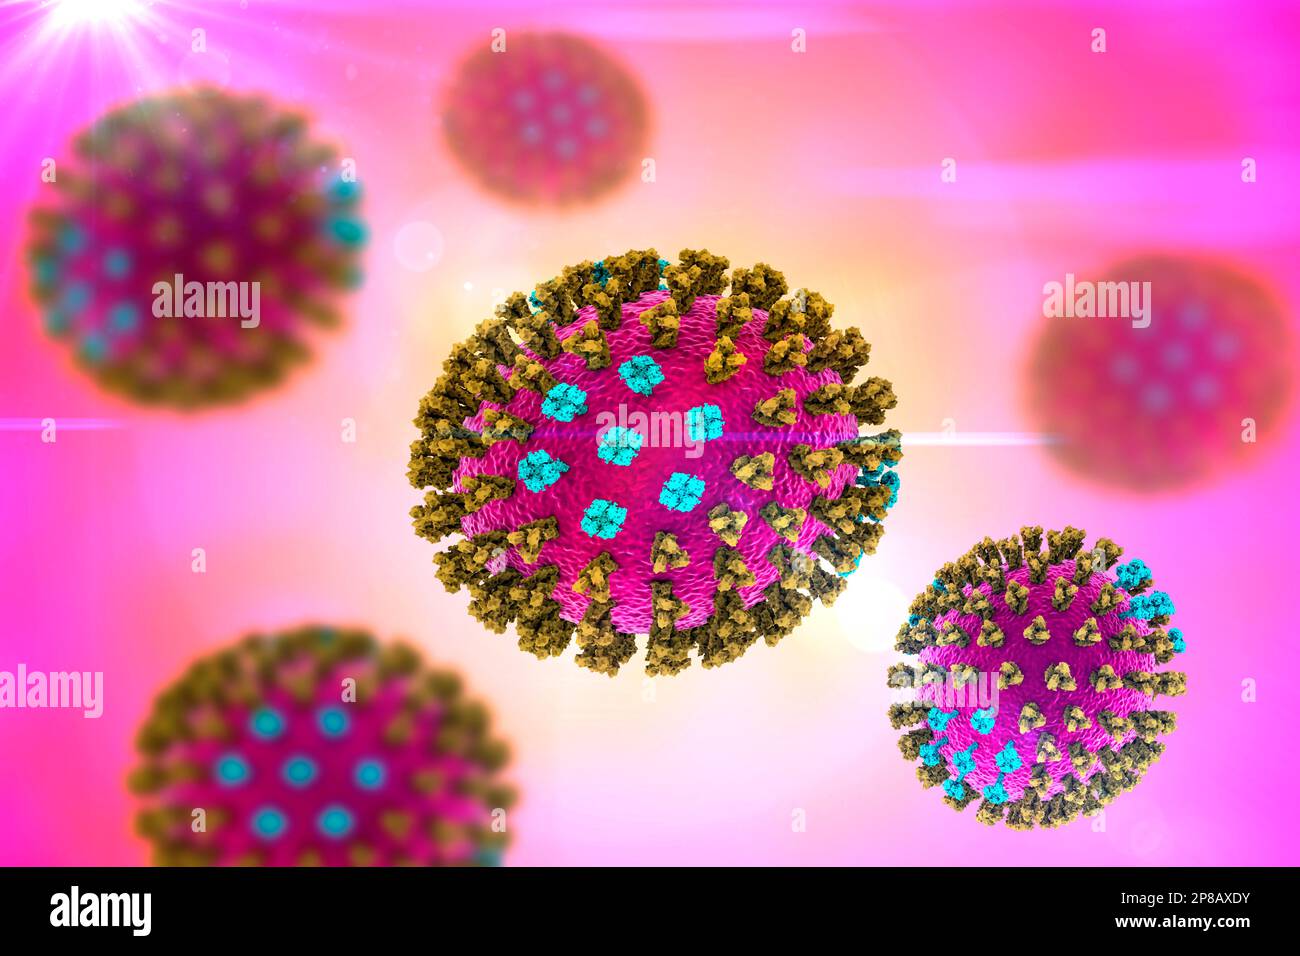 Virus influenzali, illustrazione del computer. Ciascun virus è costituito da un nucleo di materiale genetico RNA (acido ribonucleico) circondato da un rivestimento proteico (viola). Em Foto Stock